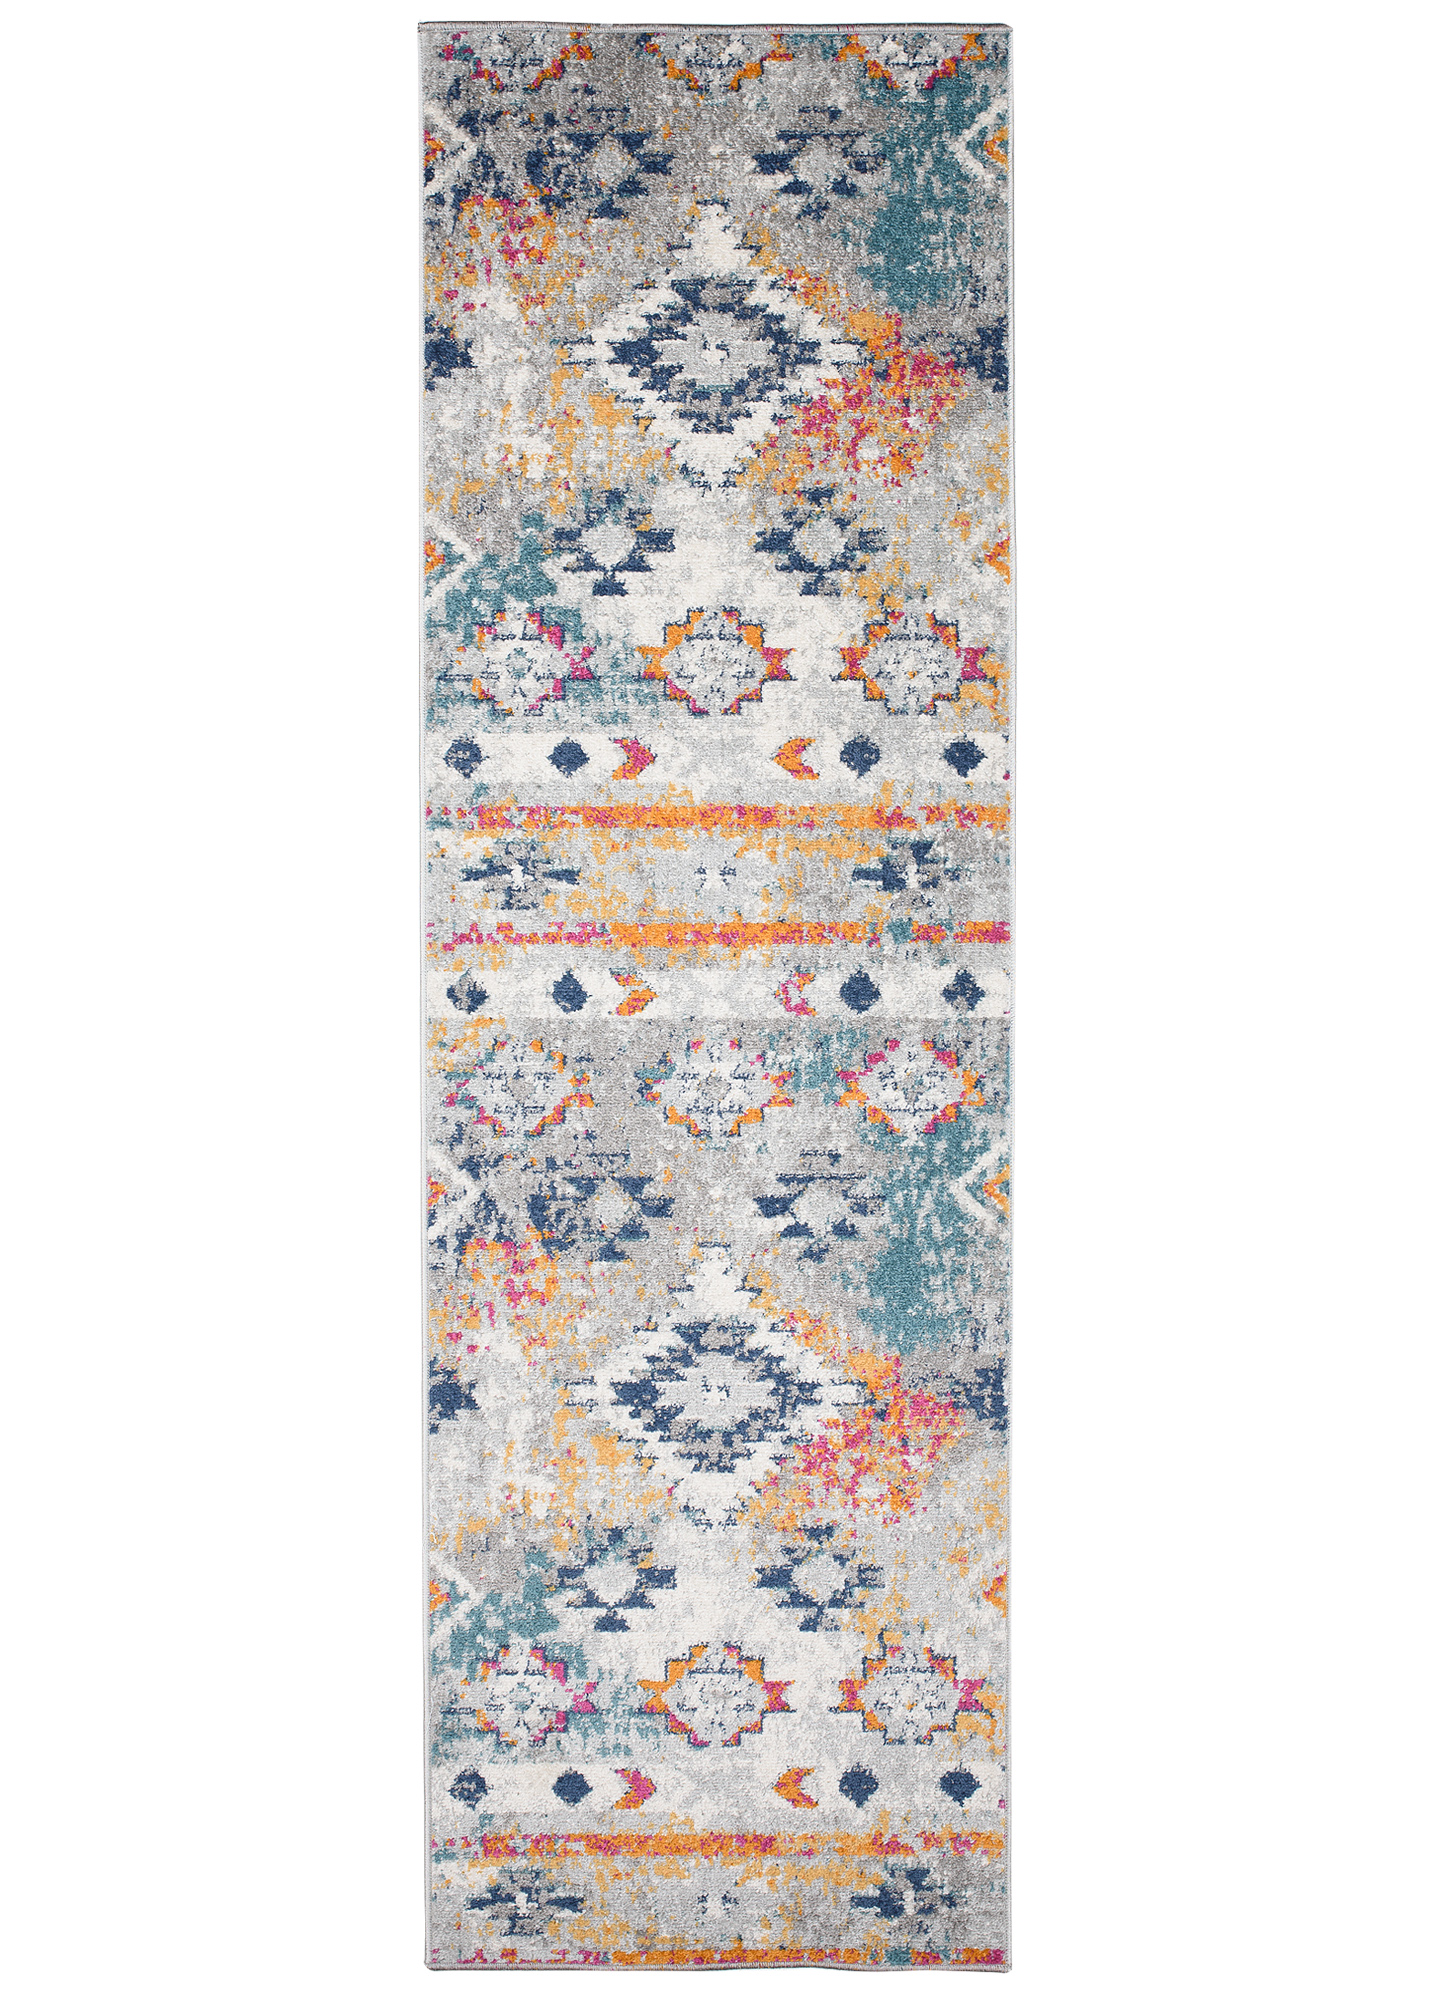 Moderner Teppich Läufer Ethno Design Mehrfarbig Grau Wohnzimmer Flur | eBay